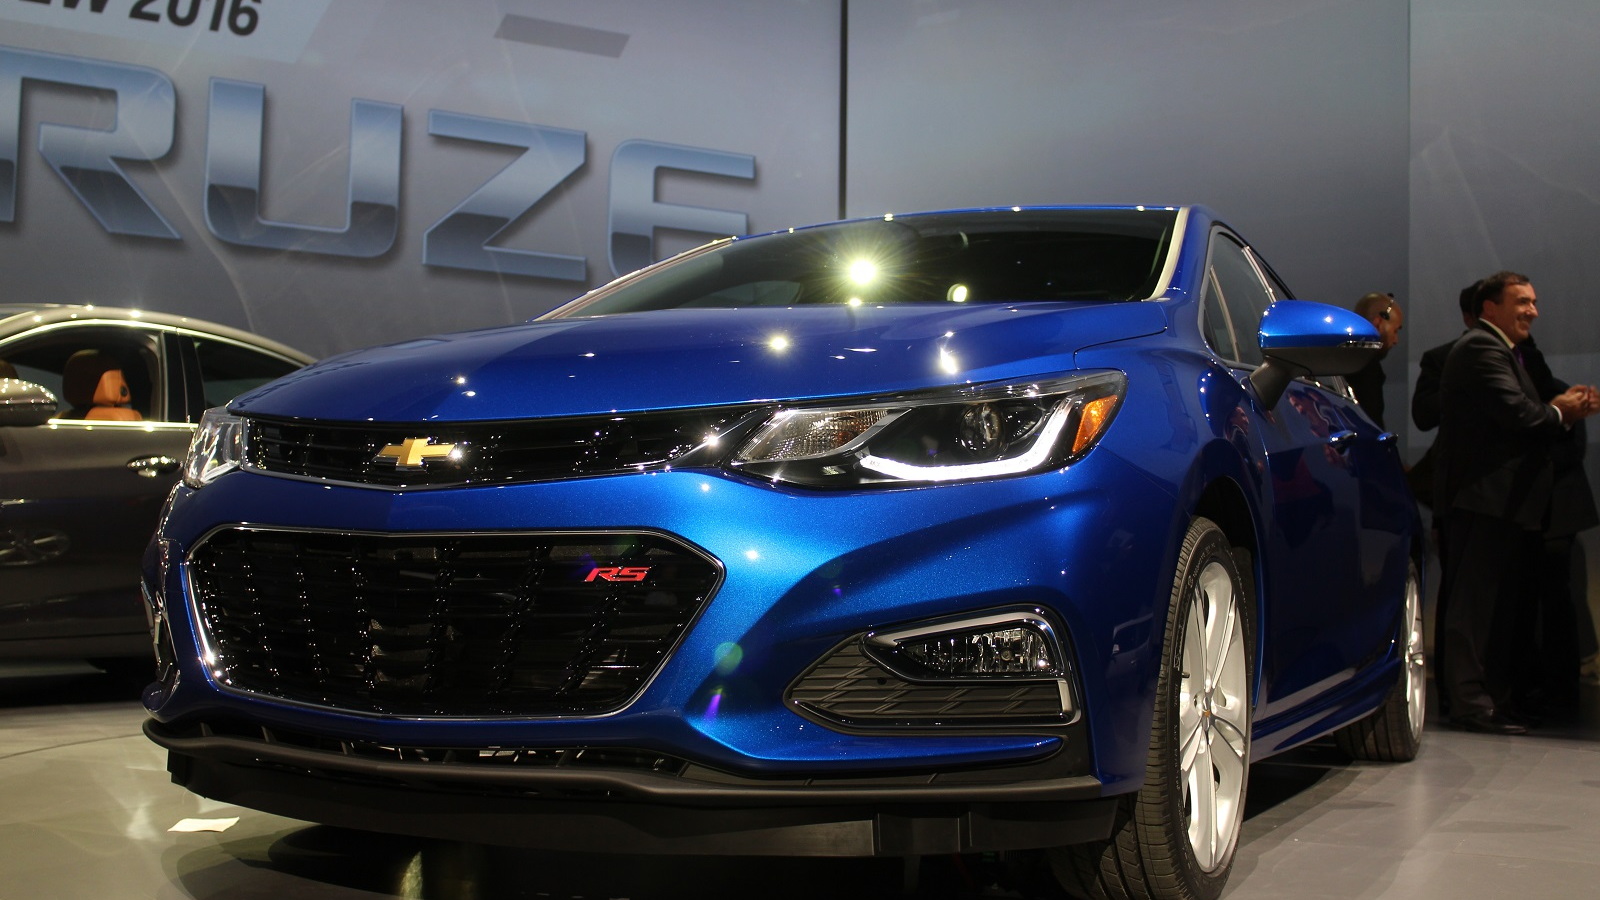 2016 Chevrolet Cruze unveiling, Detroit, June 2015